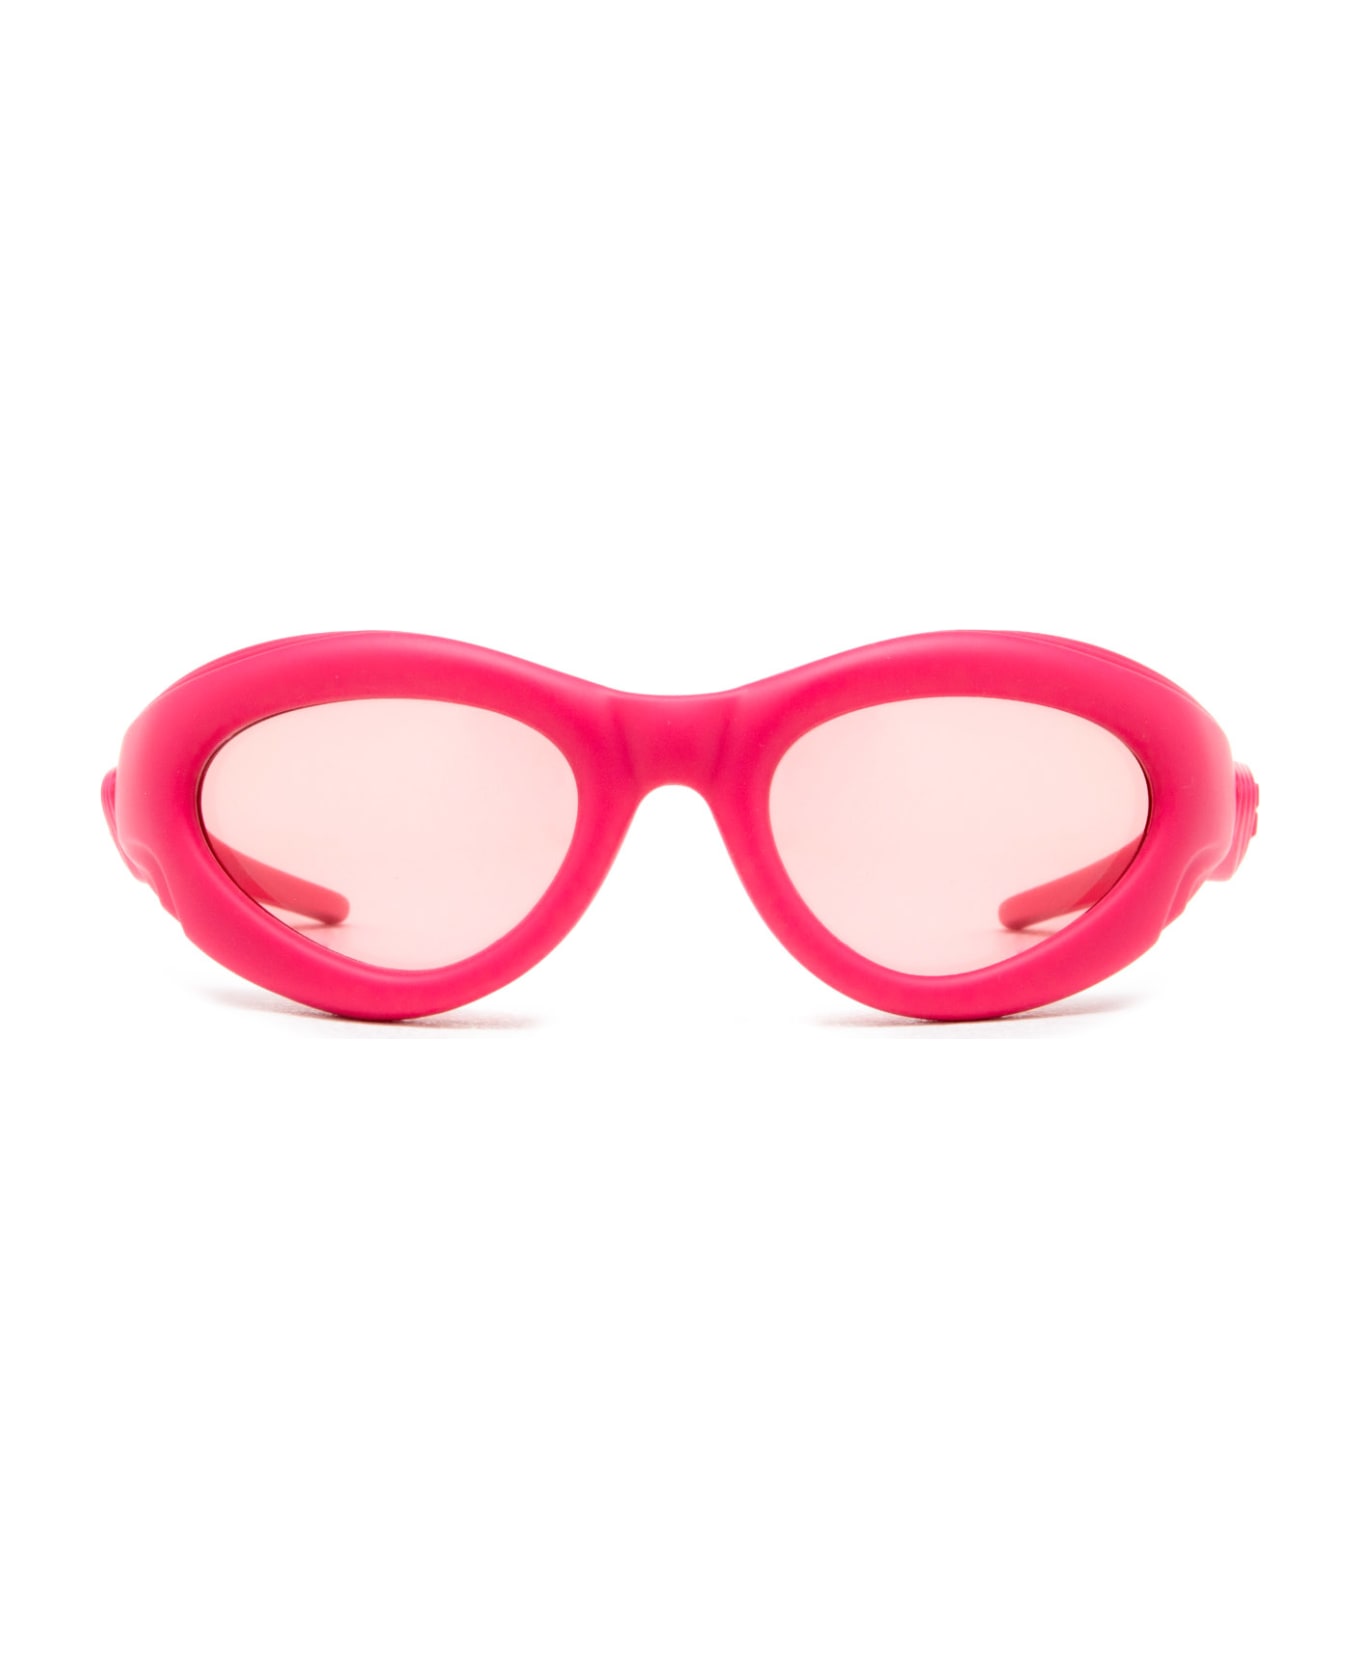 Bottega Veneta Eyewear Bv1162s Pink Sunglasses - Pink